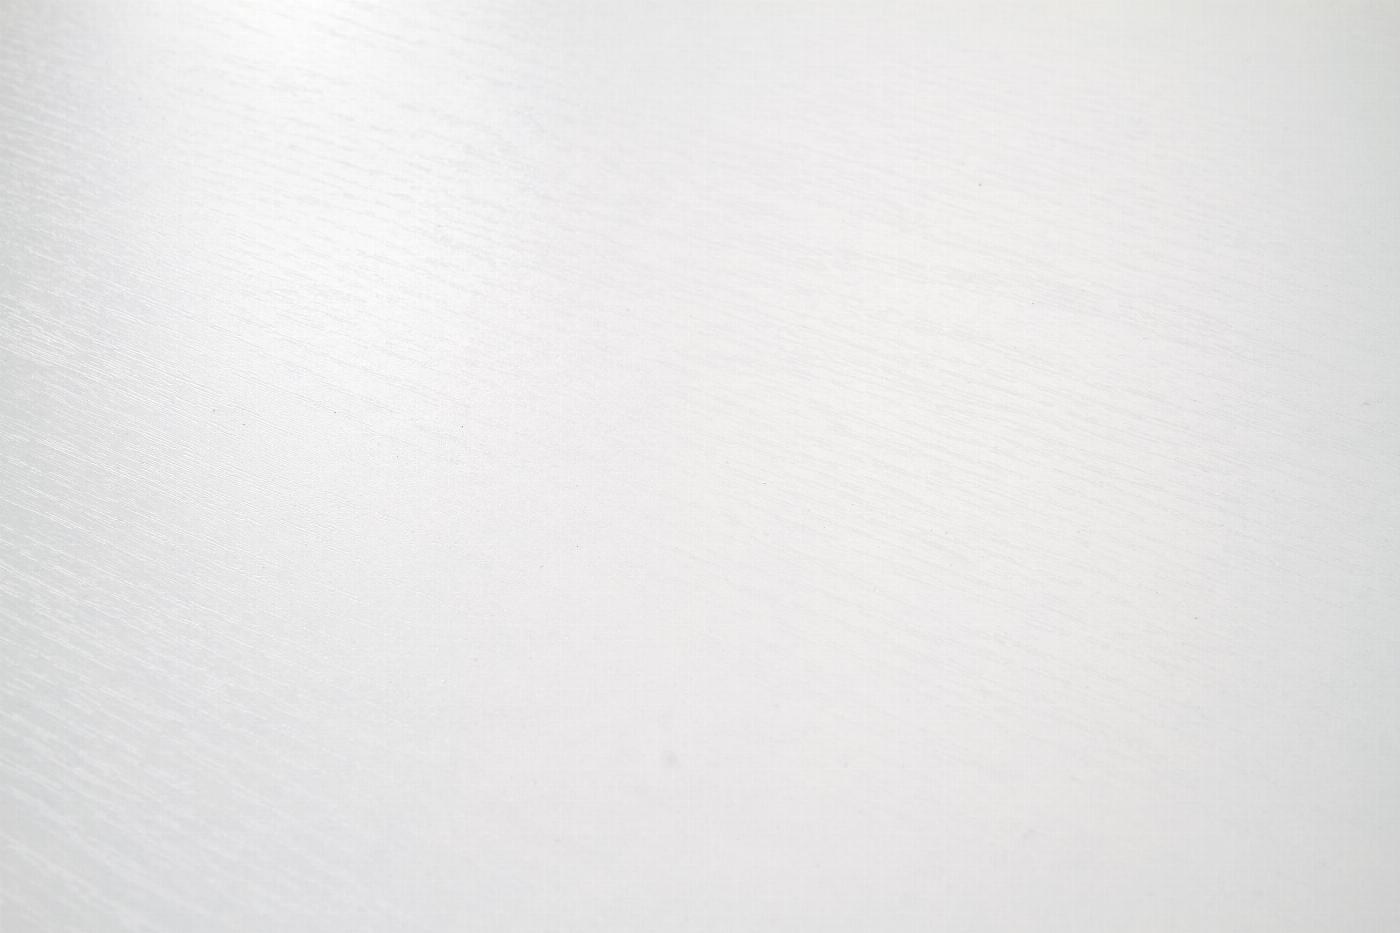 KSAWERY stół kolor biały (2p=1szt)